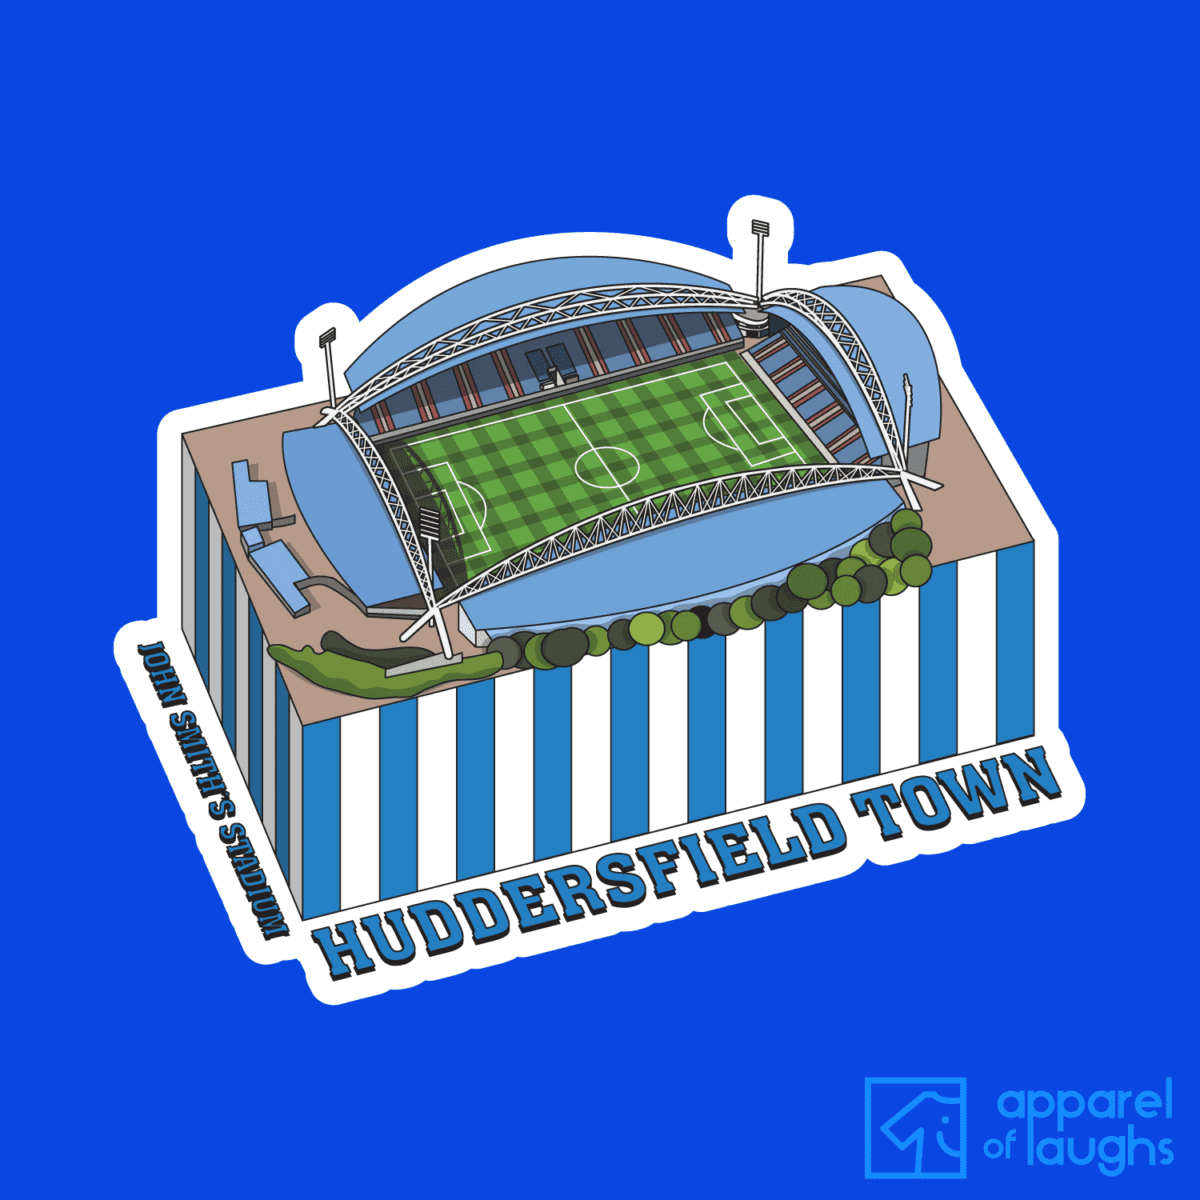 Huddersfield Town John Smith's Stadium Football Illustration T Shirt Design Royal Blue